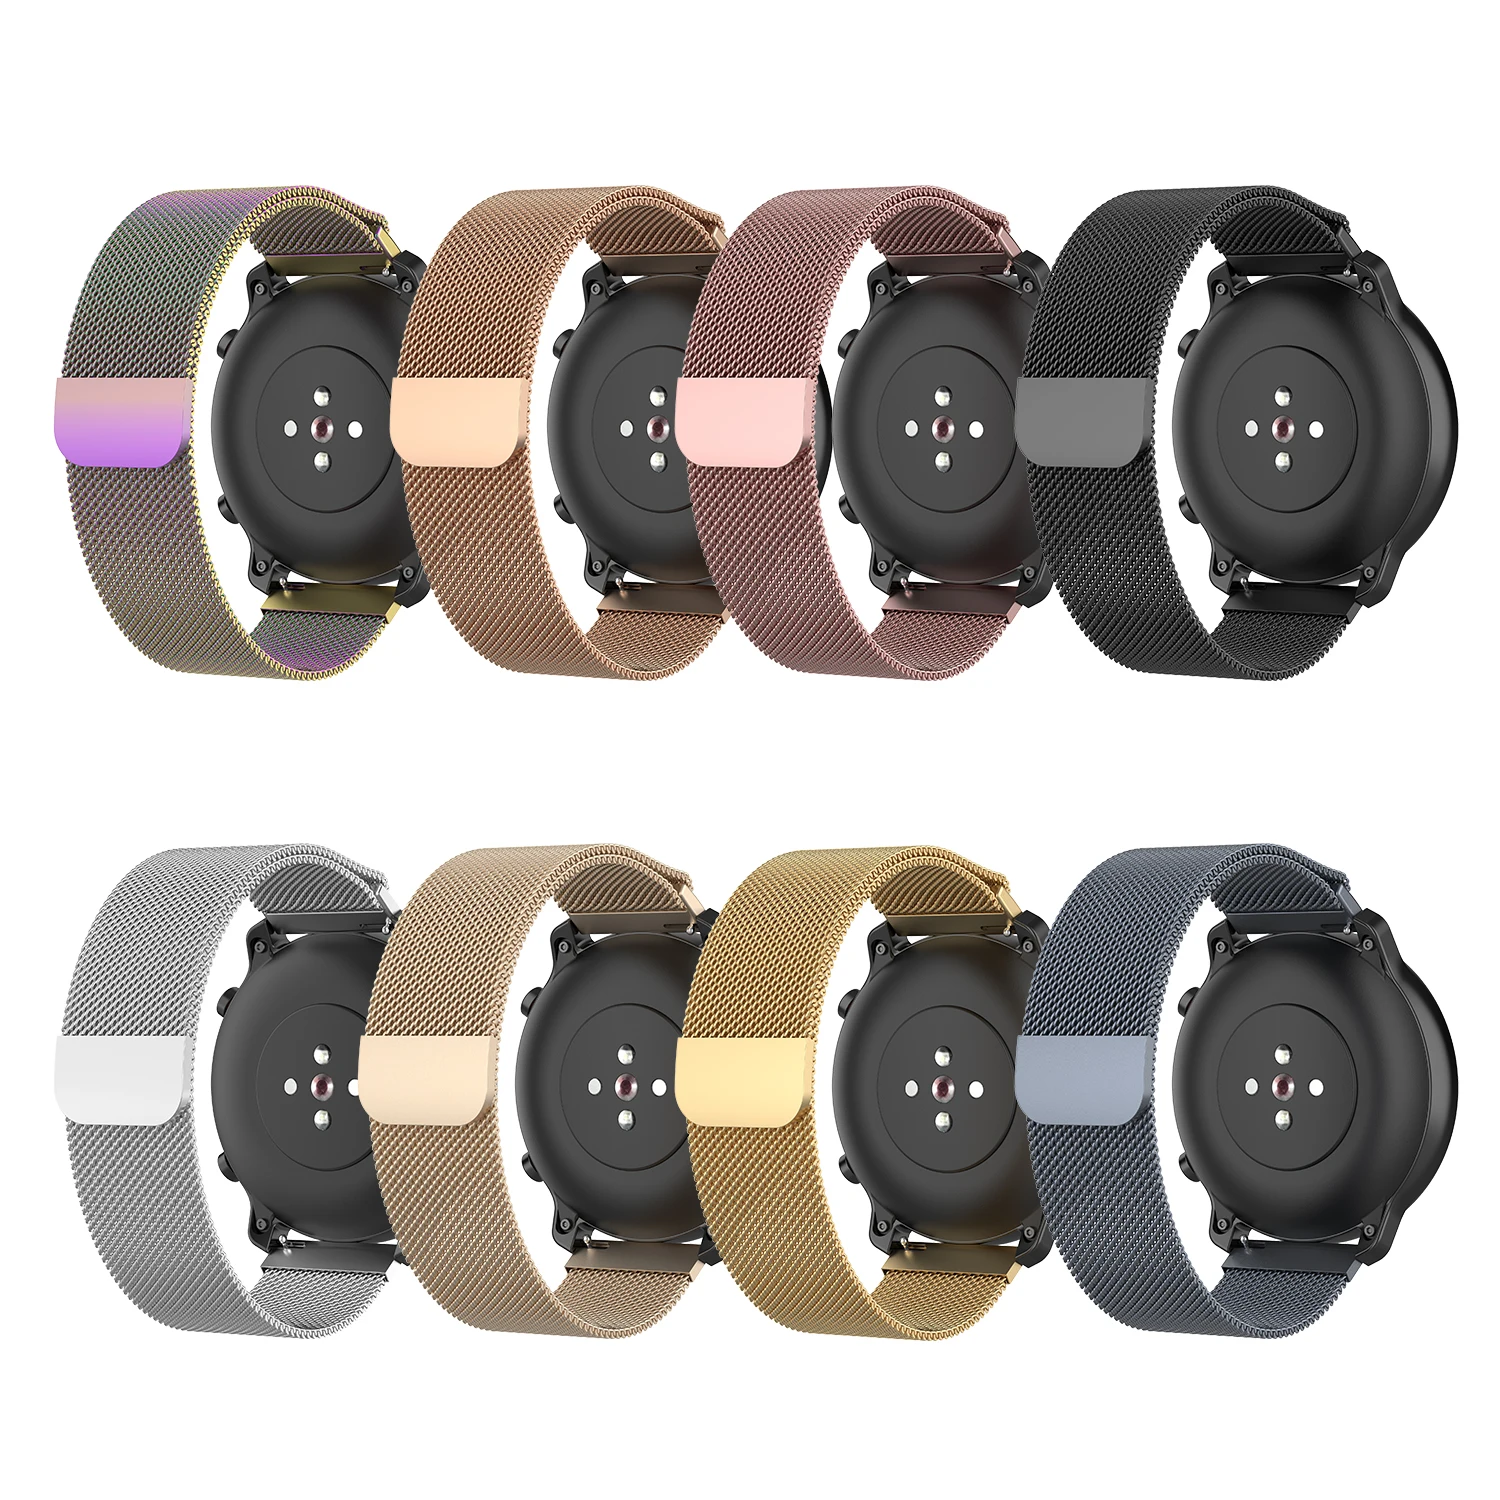 22 мм 20 мм Миланский ремешок для часов Ремешок Для Xiaomi Huami Amazfit GTR 47 мм 42 мм/Stratos 2 2S смарт-часы браслет для huawei GT 2